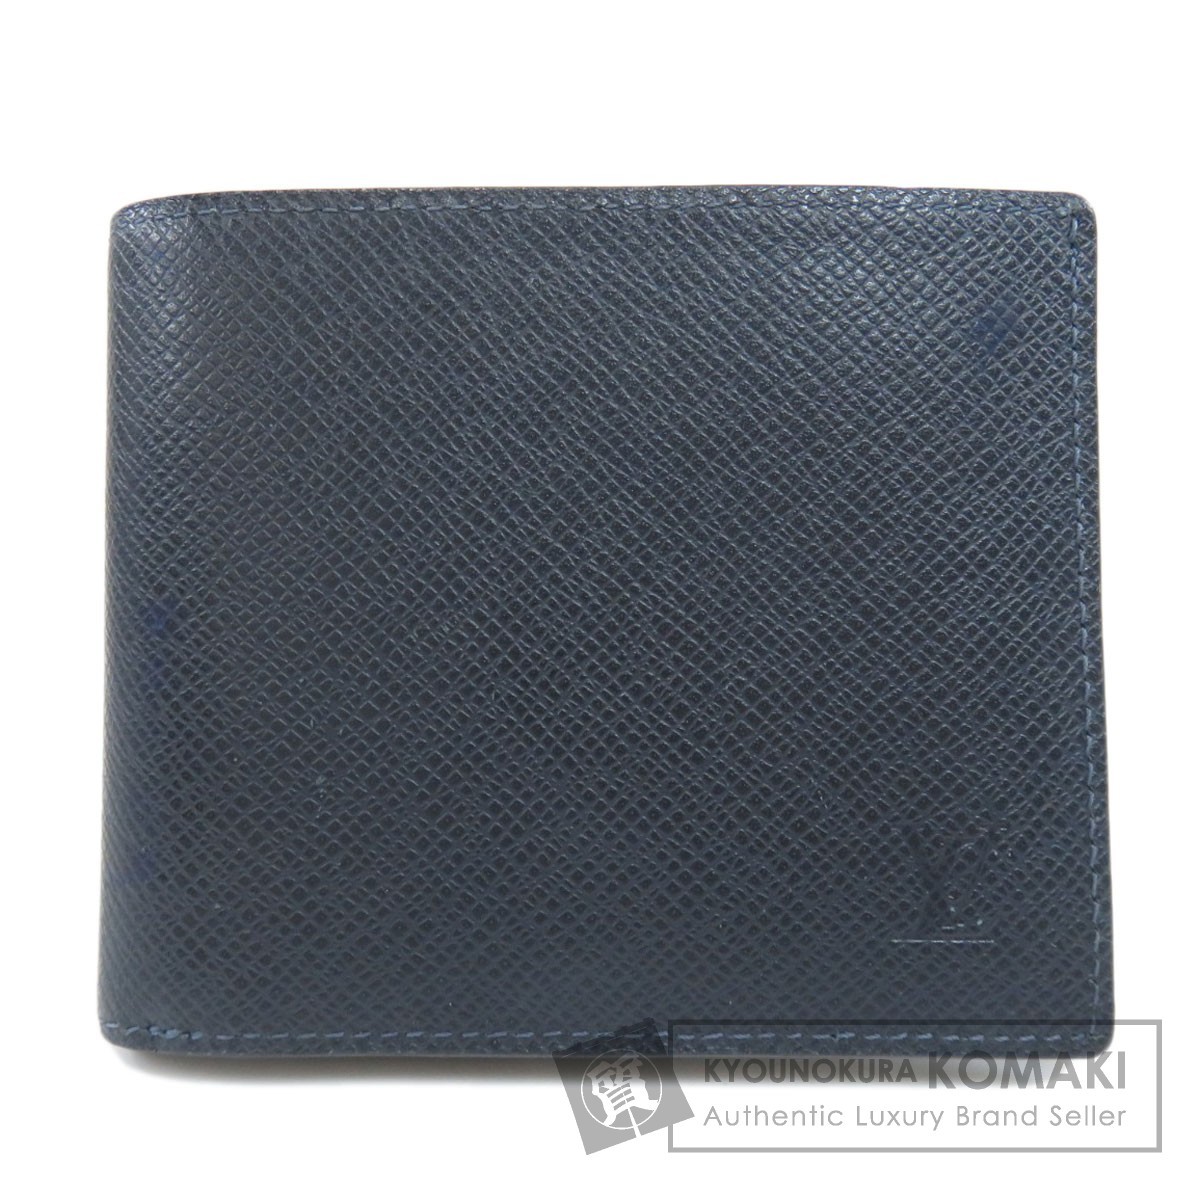 LOUIS VUITTON ルイヴィトン M42101 ポルトフォイユ アメリゴNM タイガ 二つ折り財布（小銭入れあり） タイガレザー メンズ 中古